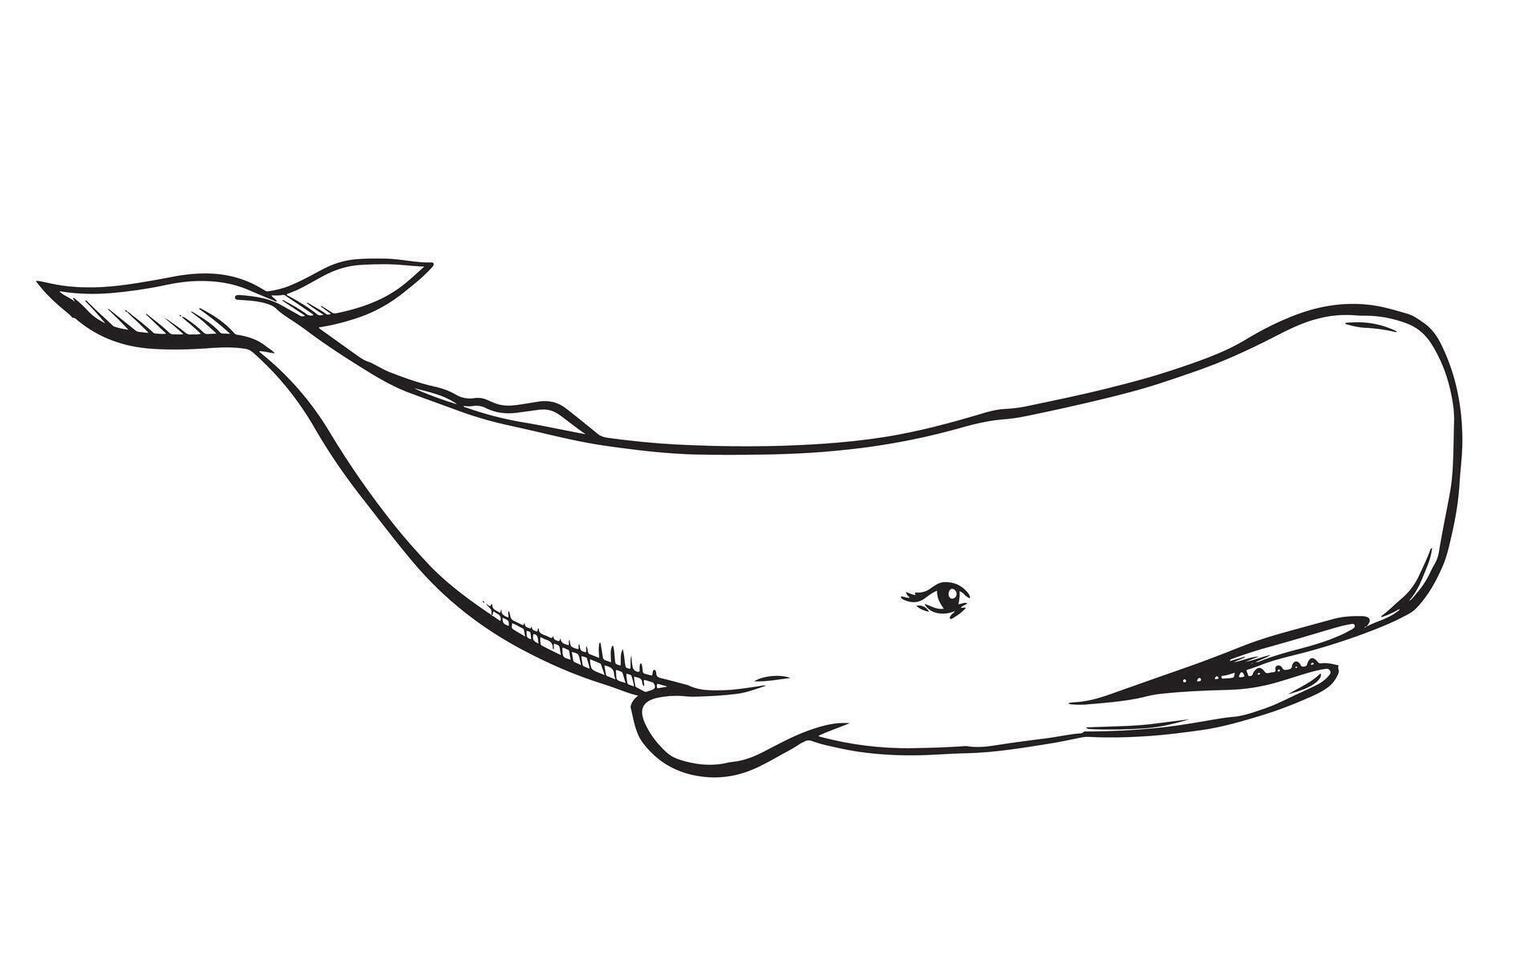 vektor teckning av en sperma val. vit val i gravyr stil. illustration för en logotyp, tatuering i en marin stil. predatory invånare av de hav.